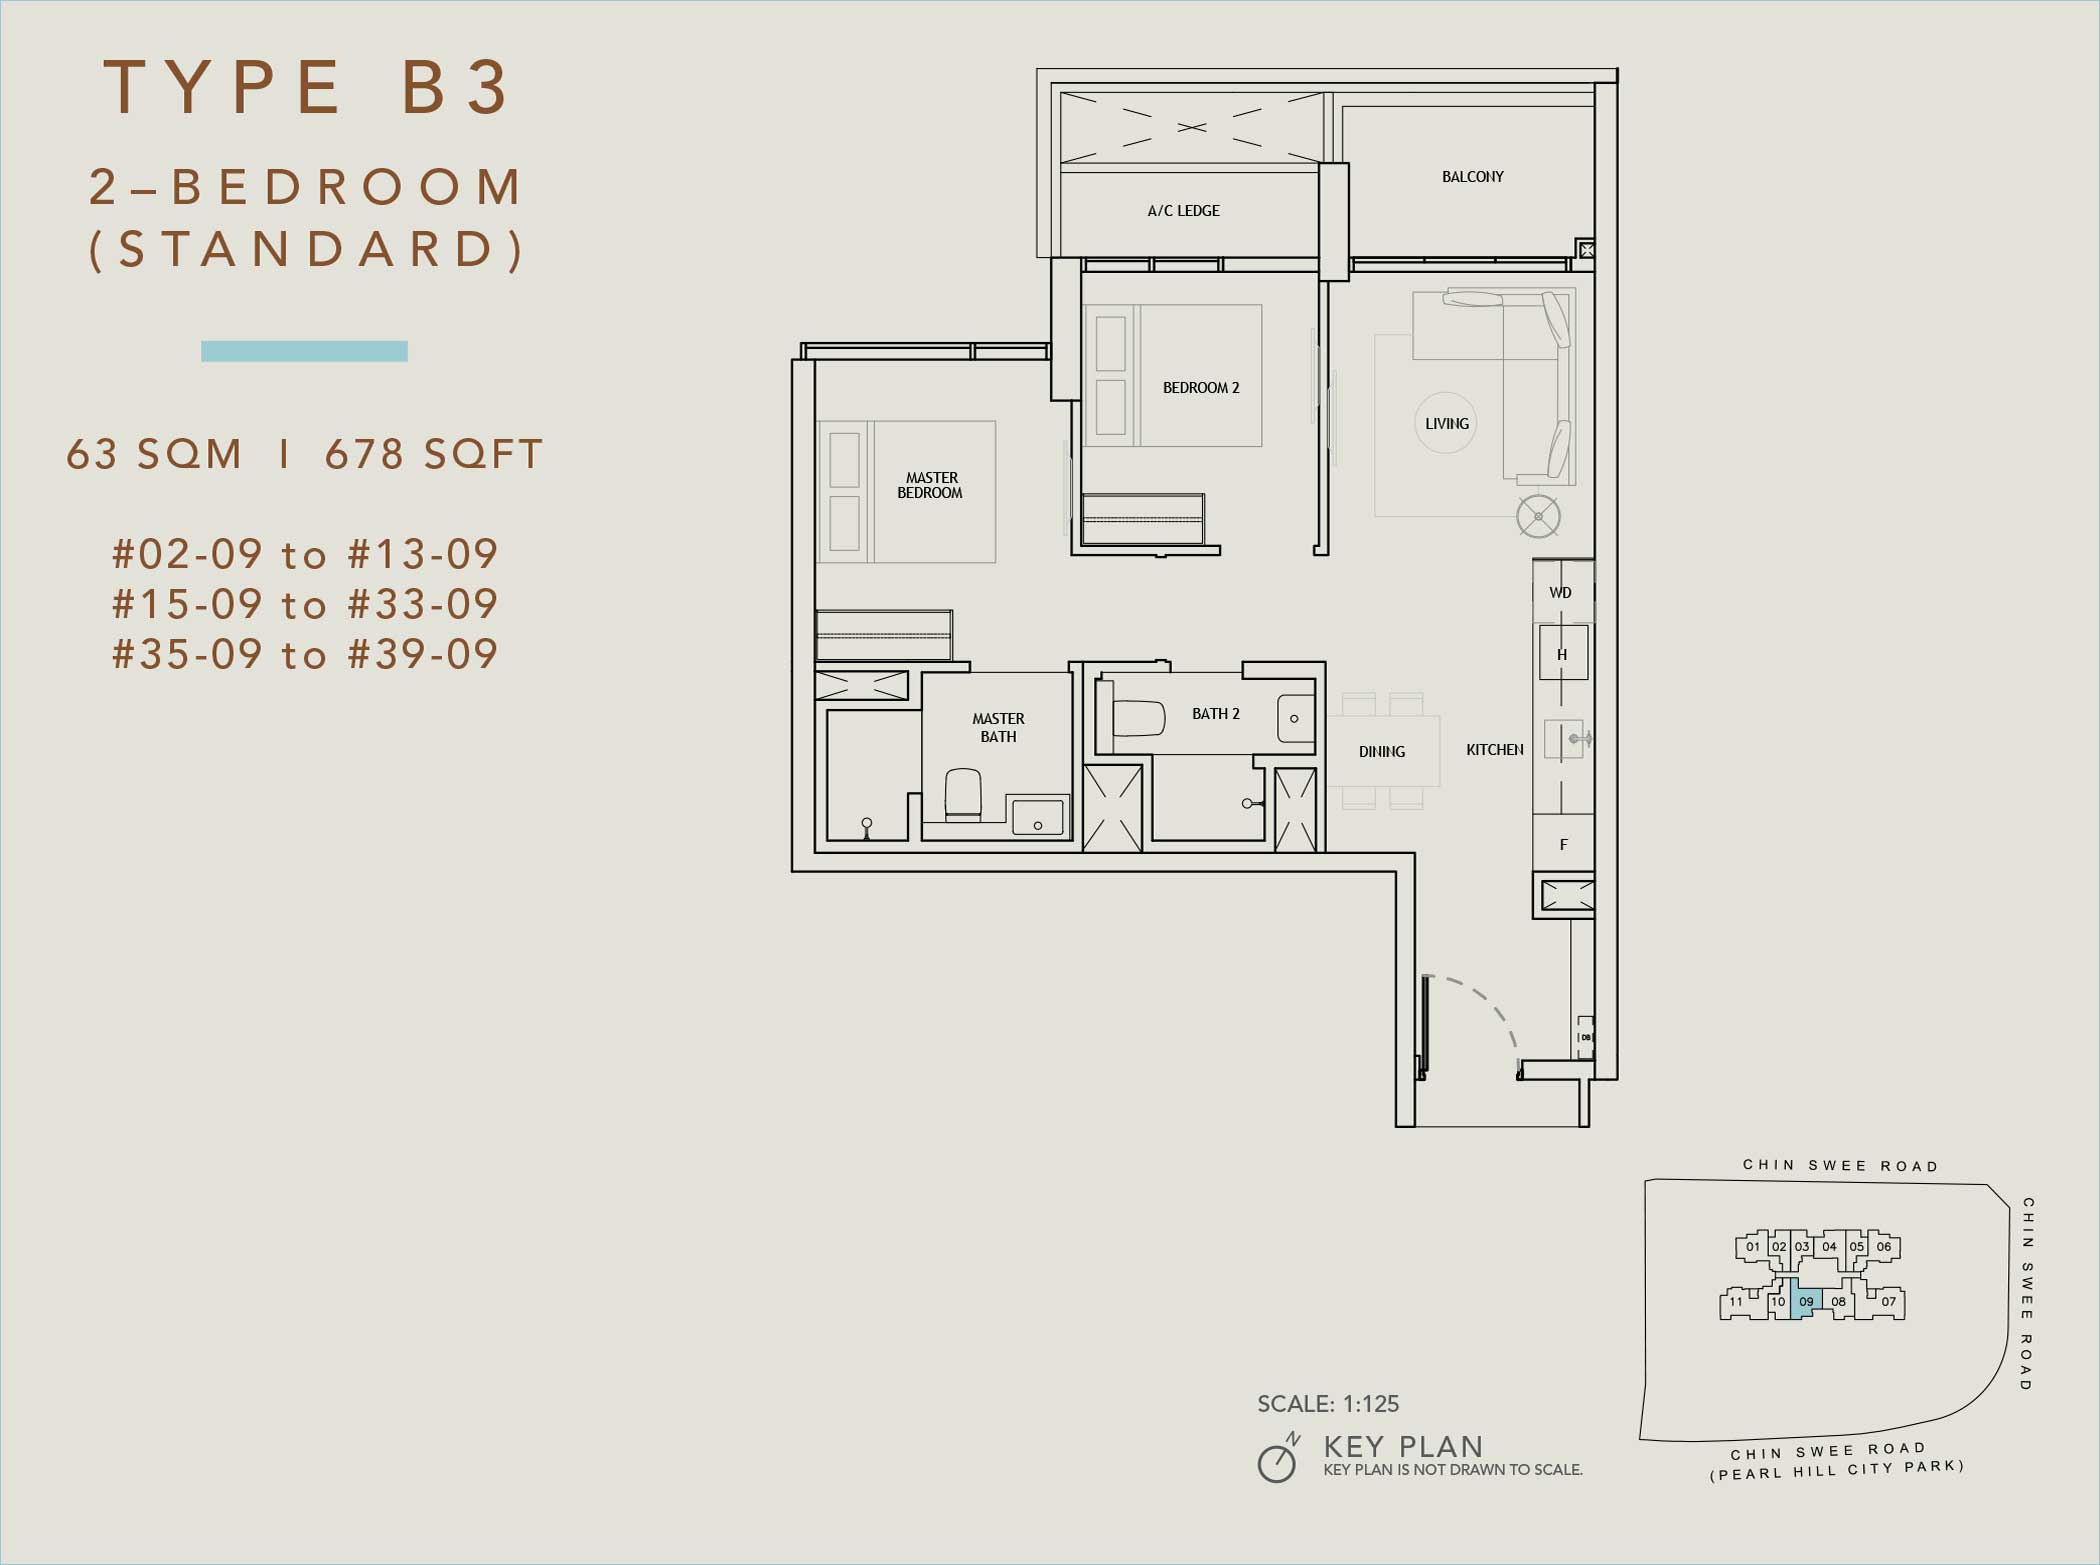 The Landmark 2-Bedroom Floor Plan (Type B3)